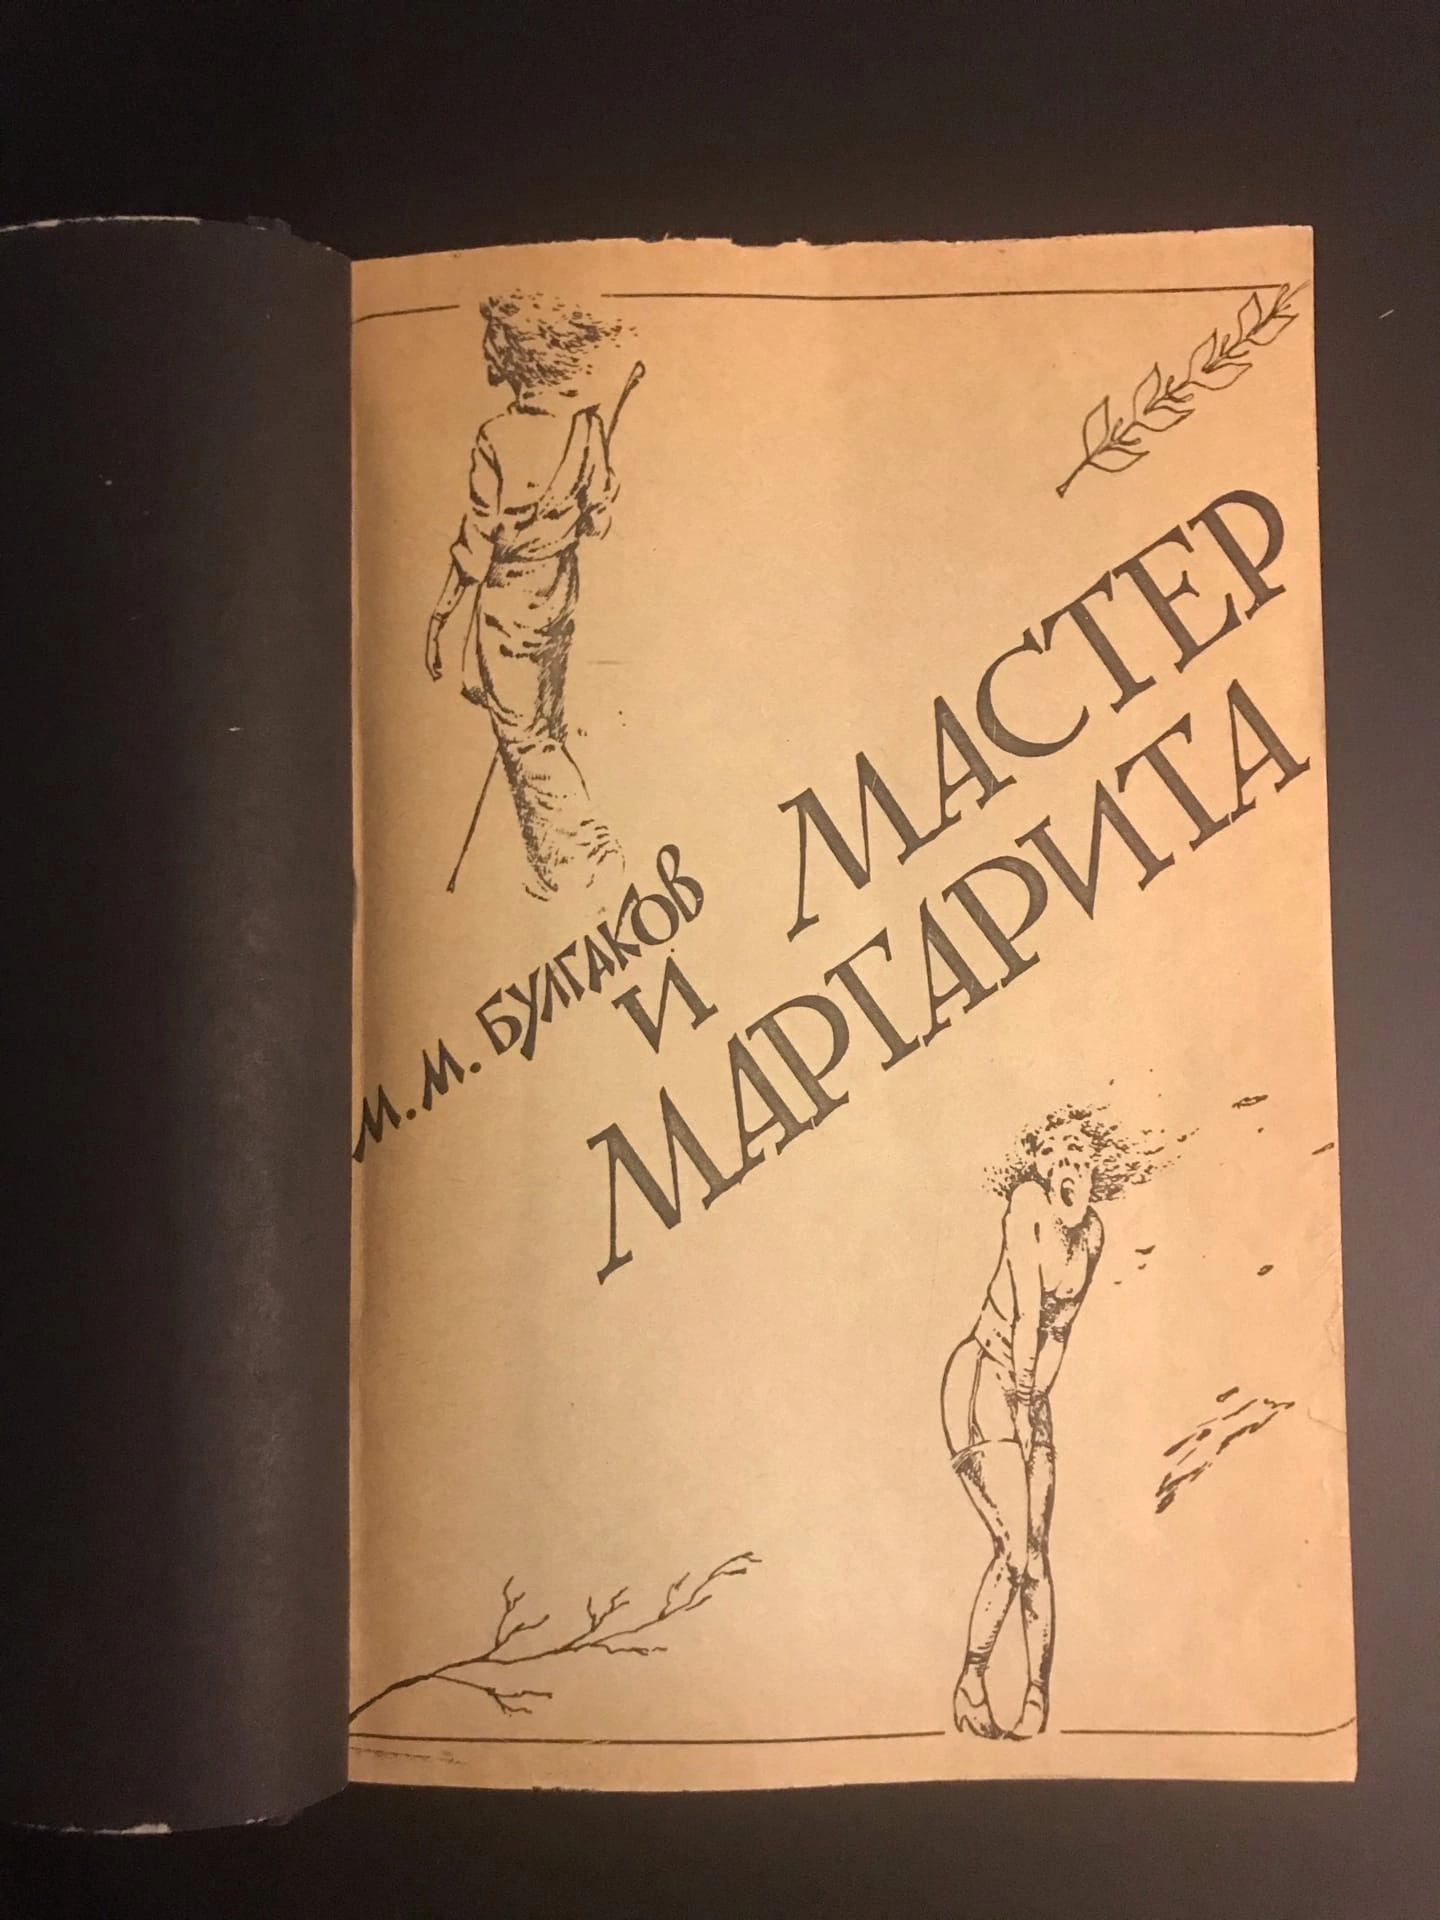 Тимофеев проиллюстрировал роман Булгакова и сам сделал книгу (в единственном экземпляре) вплоть до тиснения на обложке. 